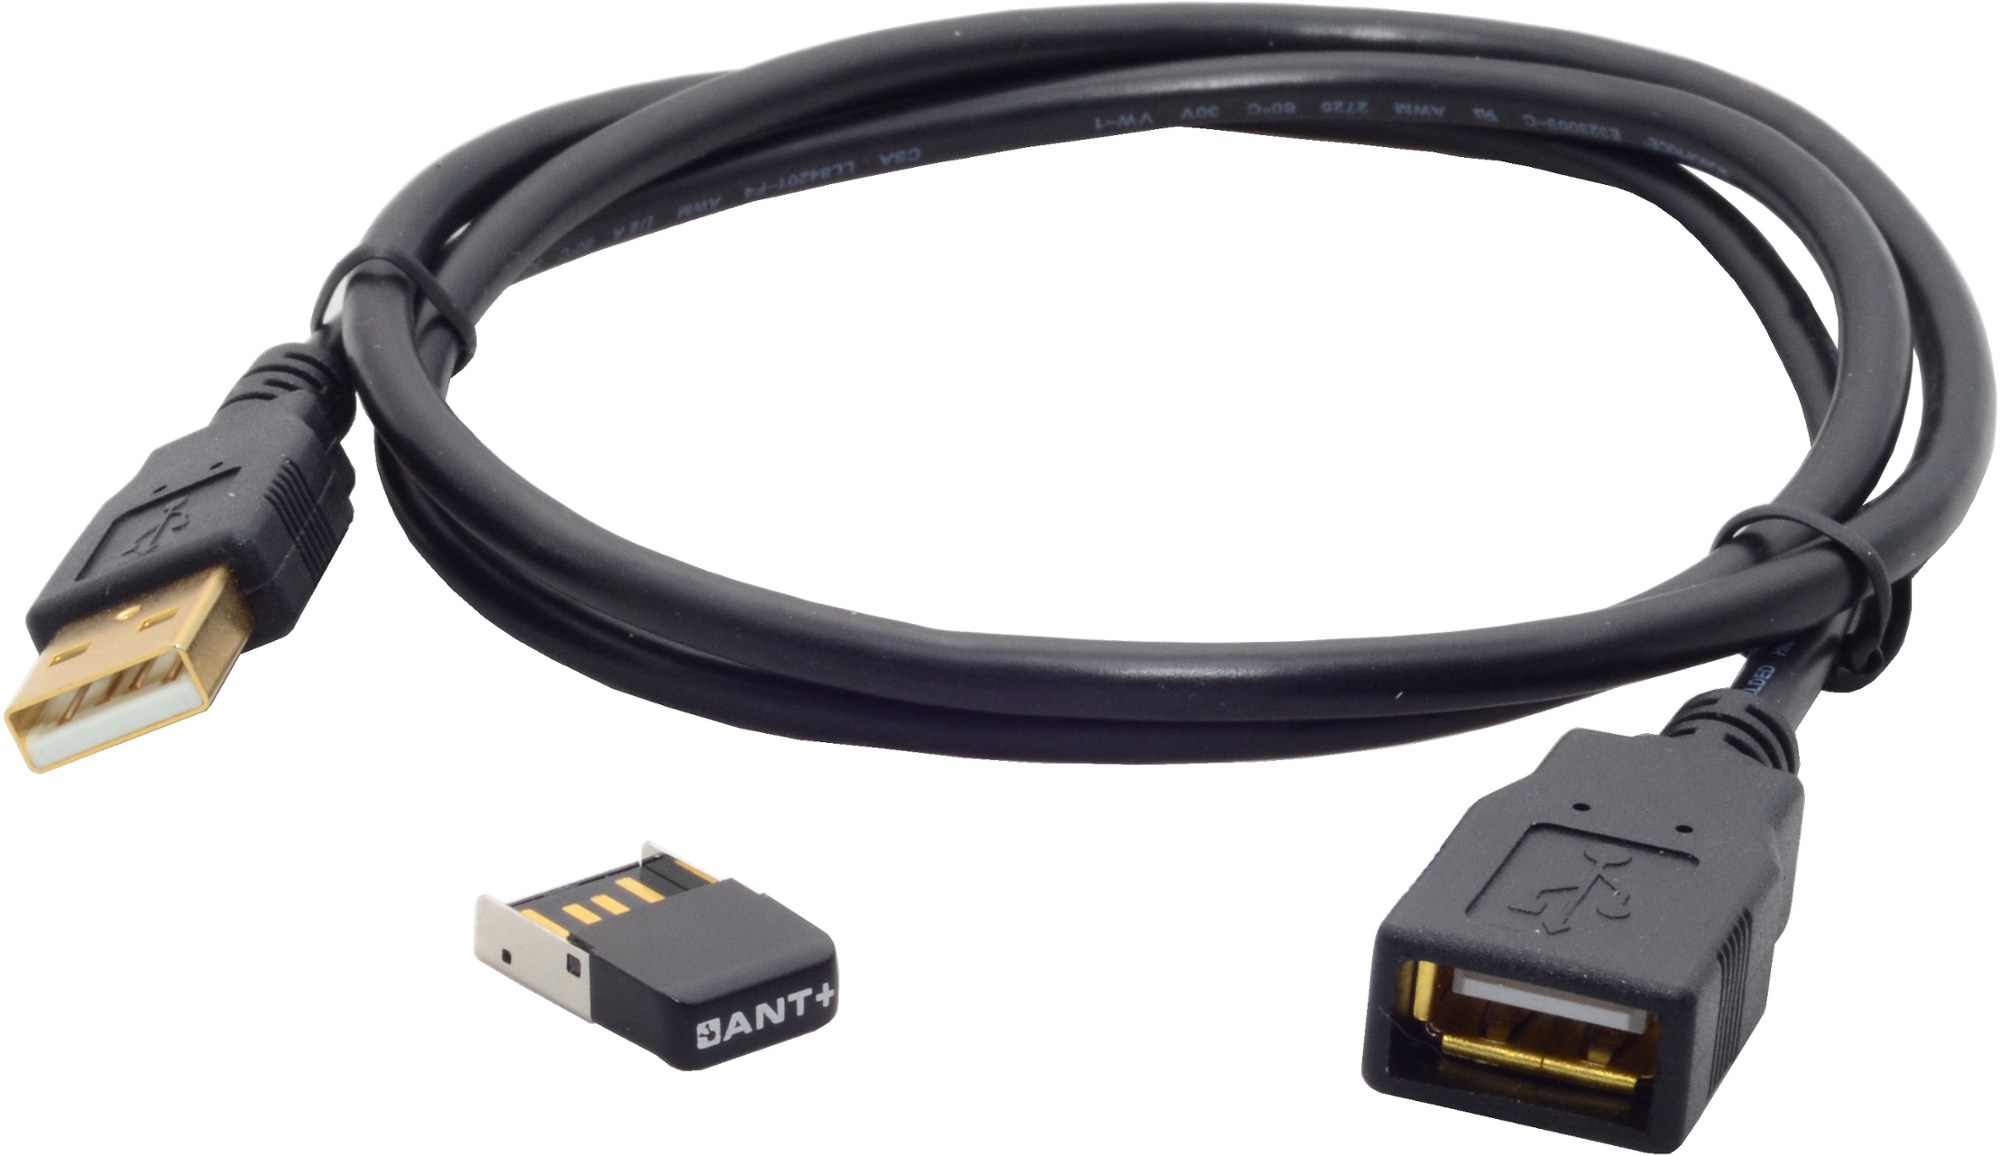 USB-адаптер ANT+ с удлинителем длиной 3 фута Wahoo Fitness, черный интеллектуальный силовой тренажер kickr snap wahoo fitness цвет one color